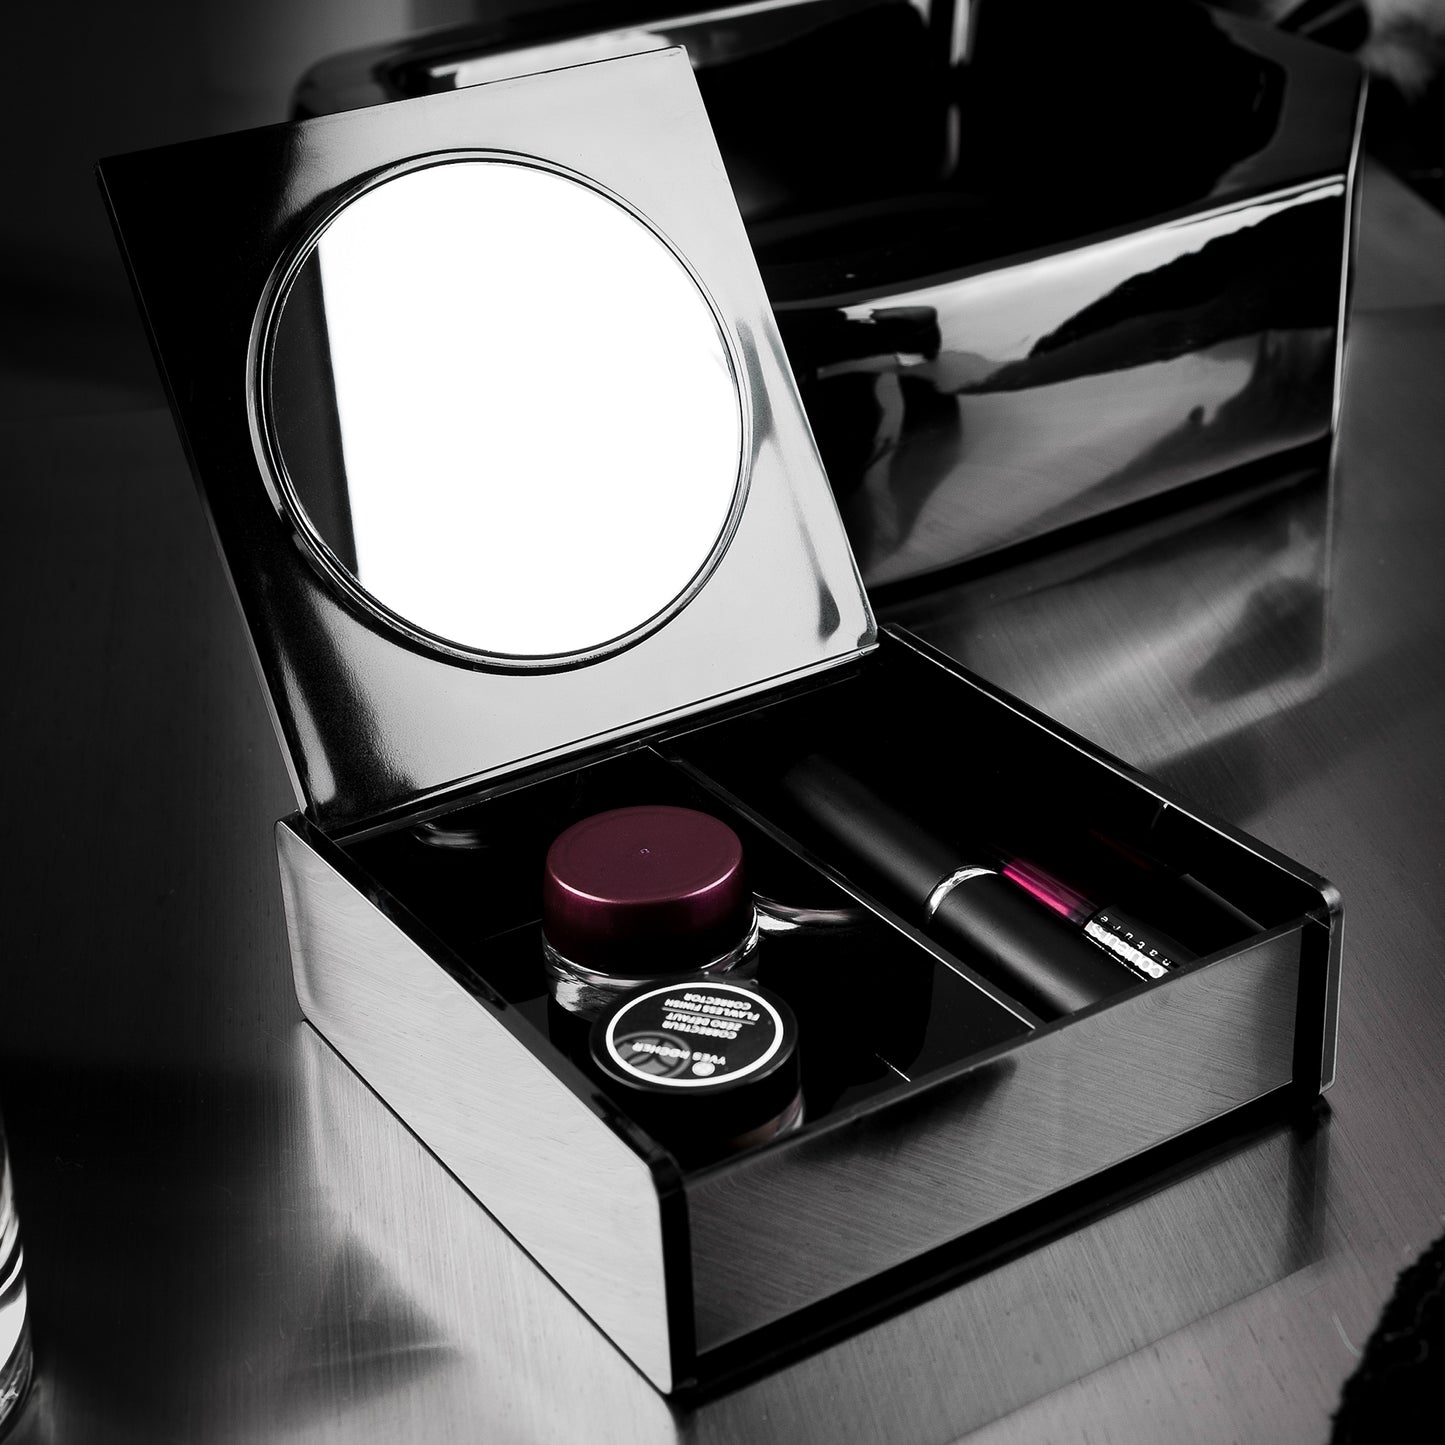 Boîte de rangement avec miroir pour maquillage et bijoux Cosmetic noire